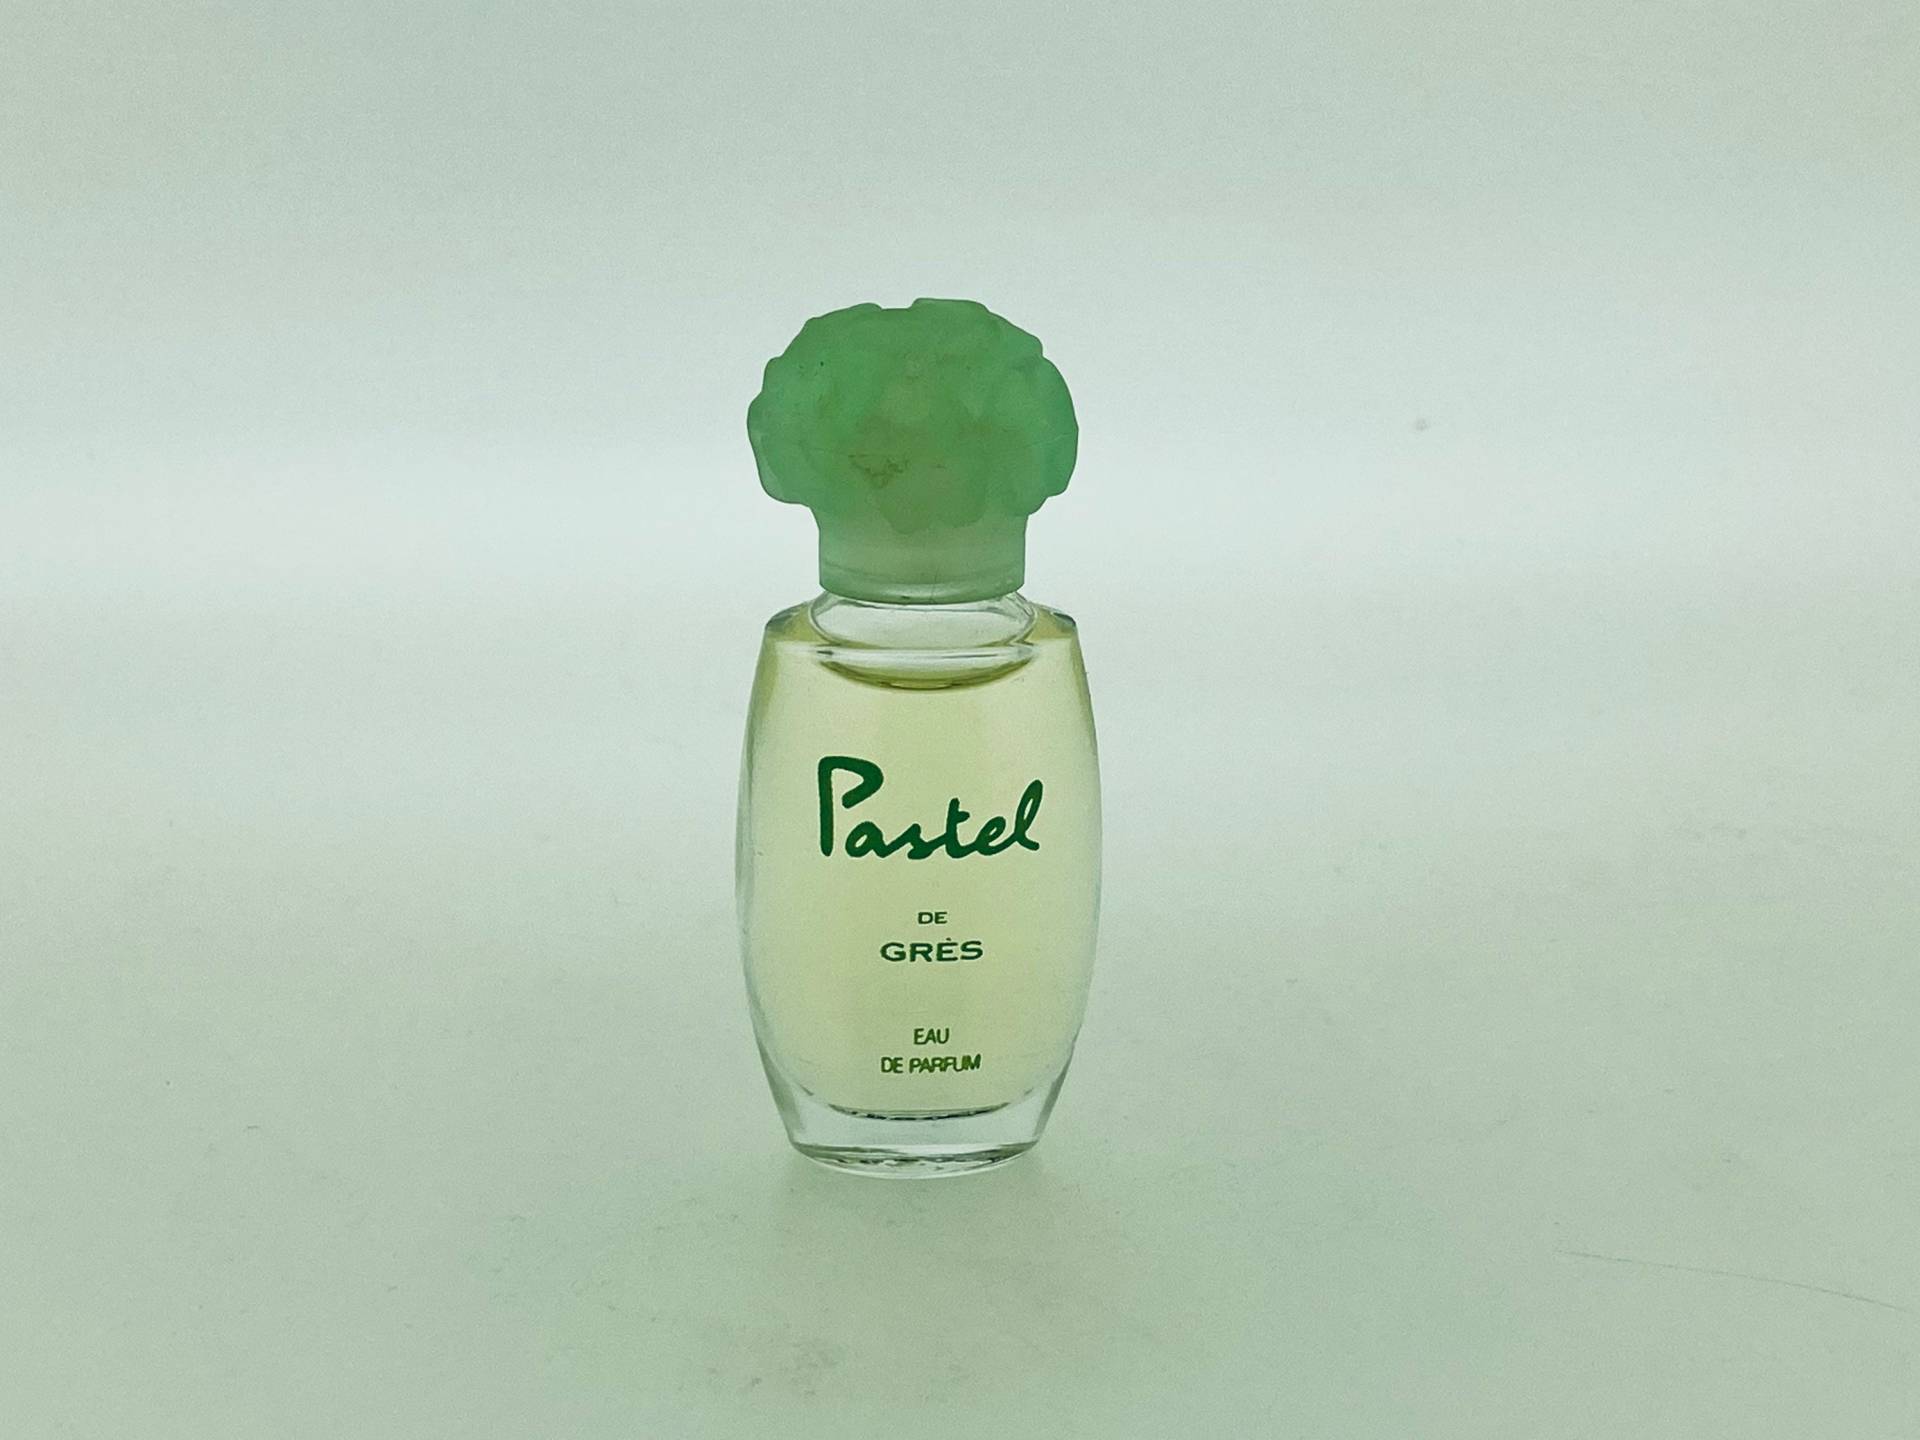 Pastell Aus Sandstein, Sandstein Wasser Miniatur Parfüm 4 Ml von Etsy - VintagGlamour